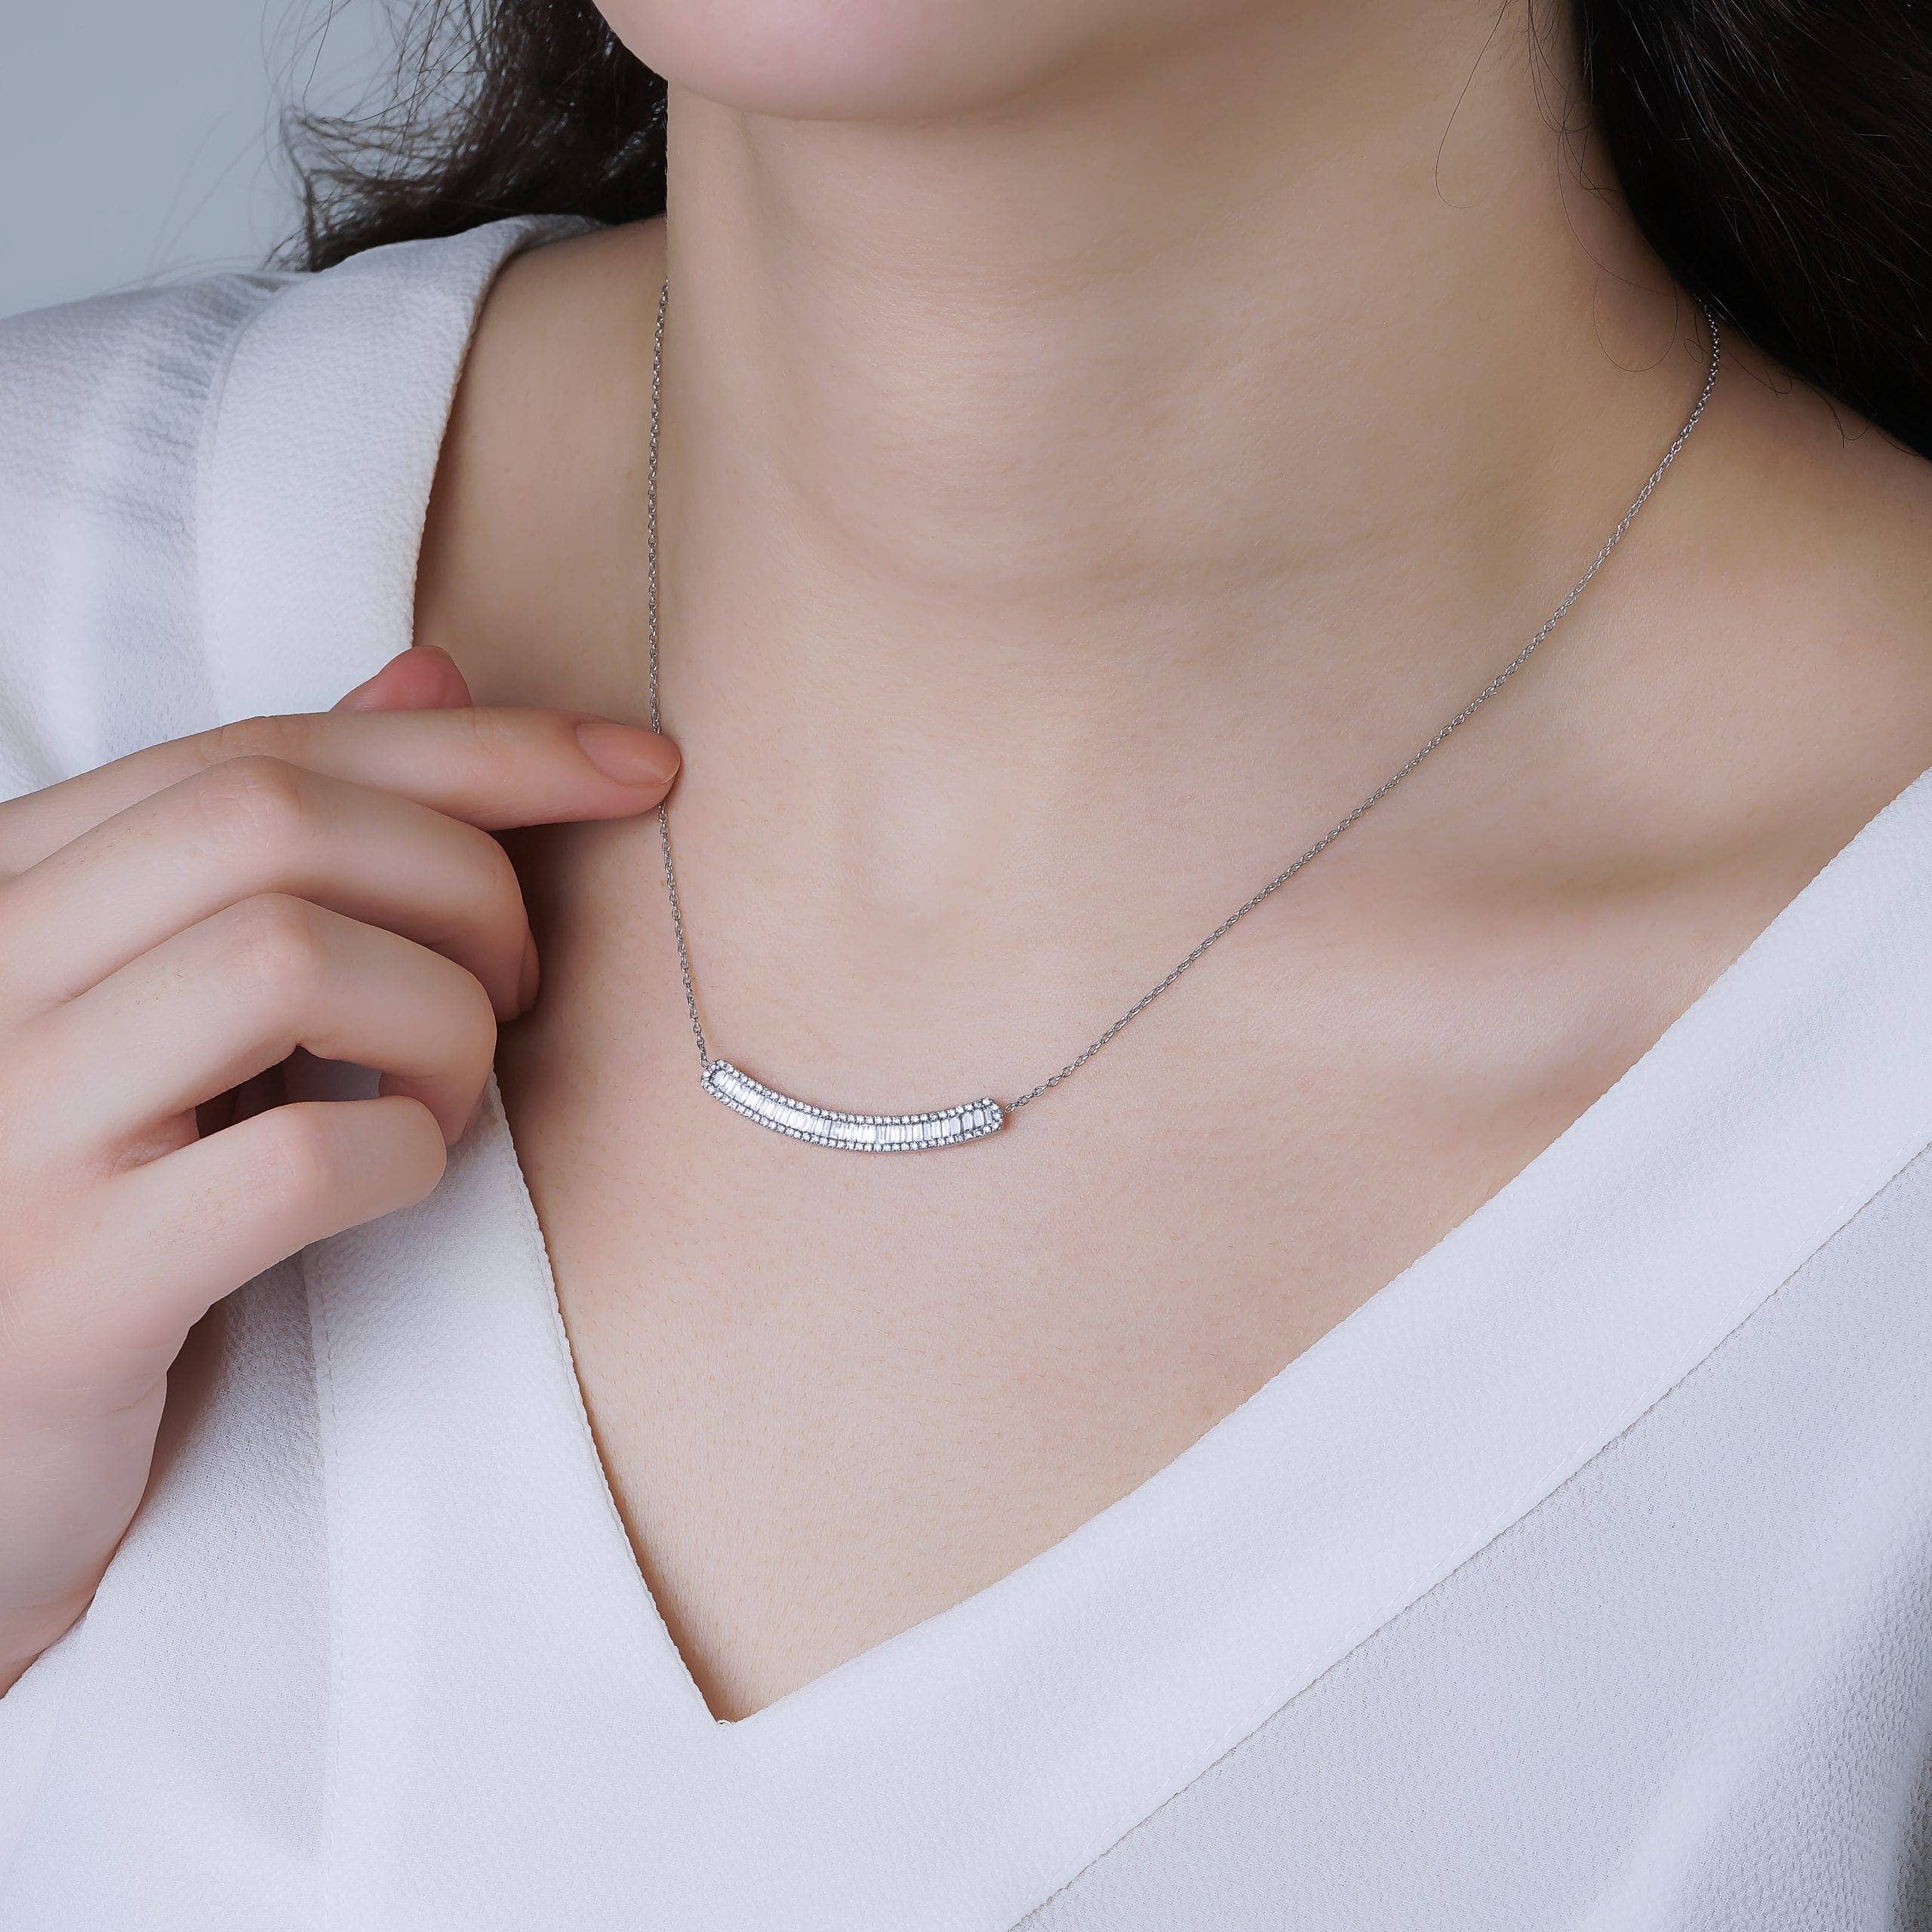 Baguette Diamond Line 1.20ct Necklace